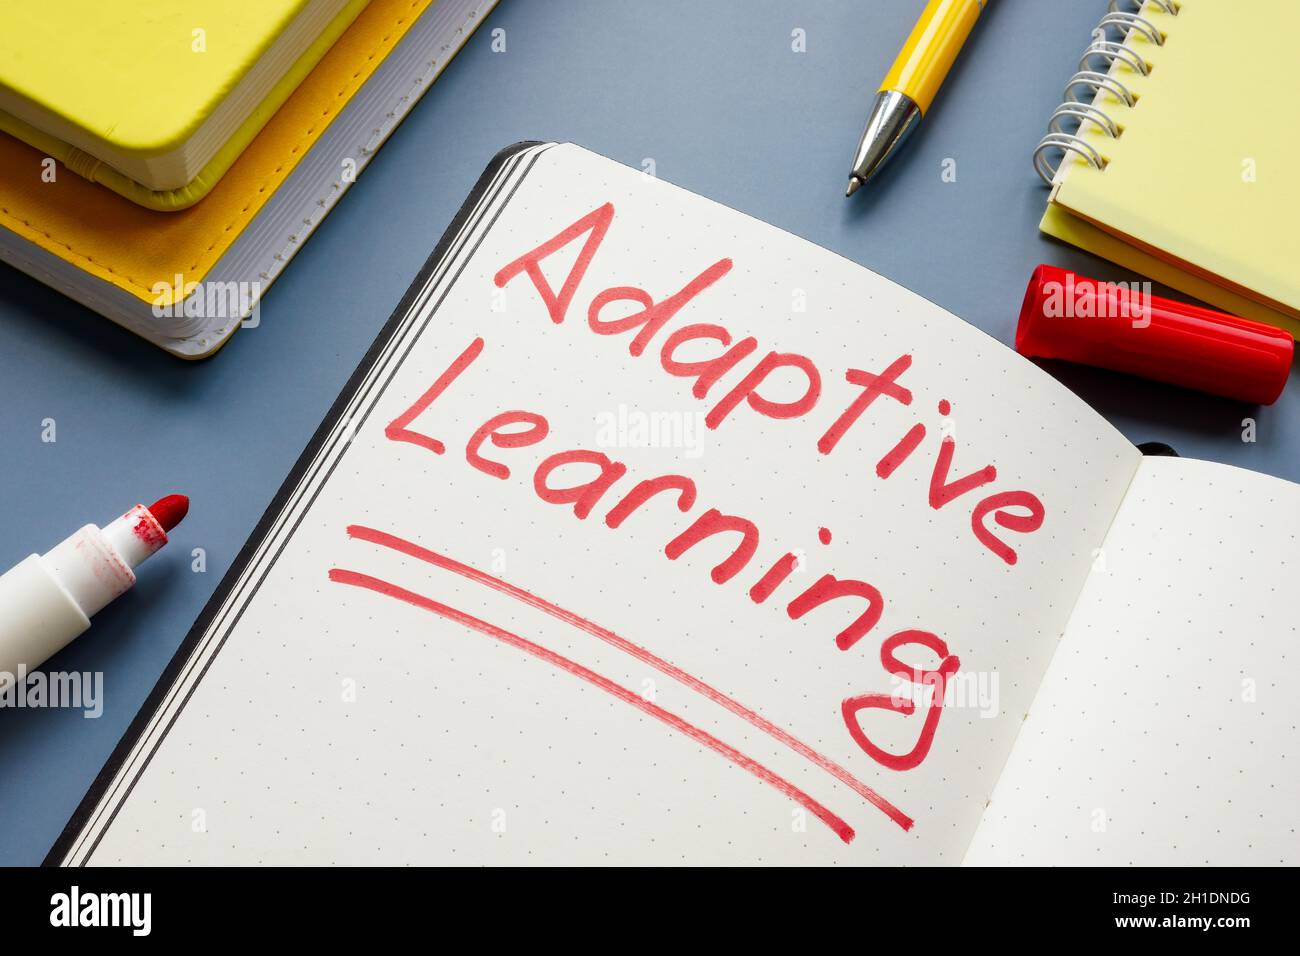 Enseigne manuscrite Adaptive Learning et livres jaunes. Banque D'Images